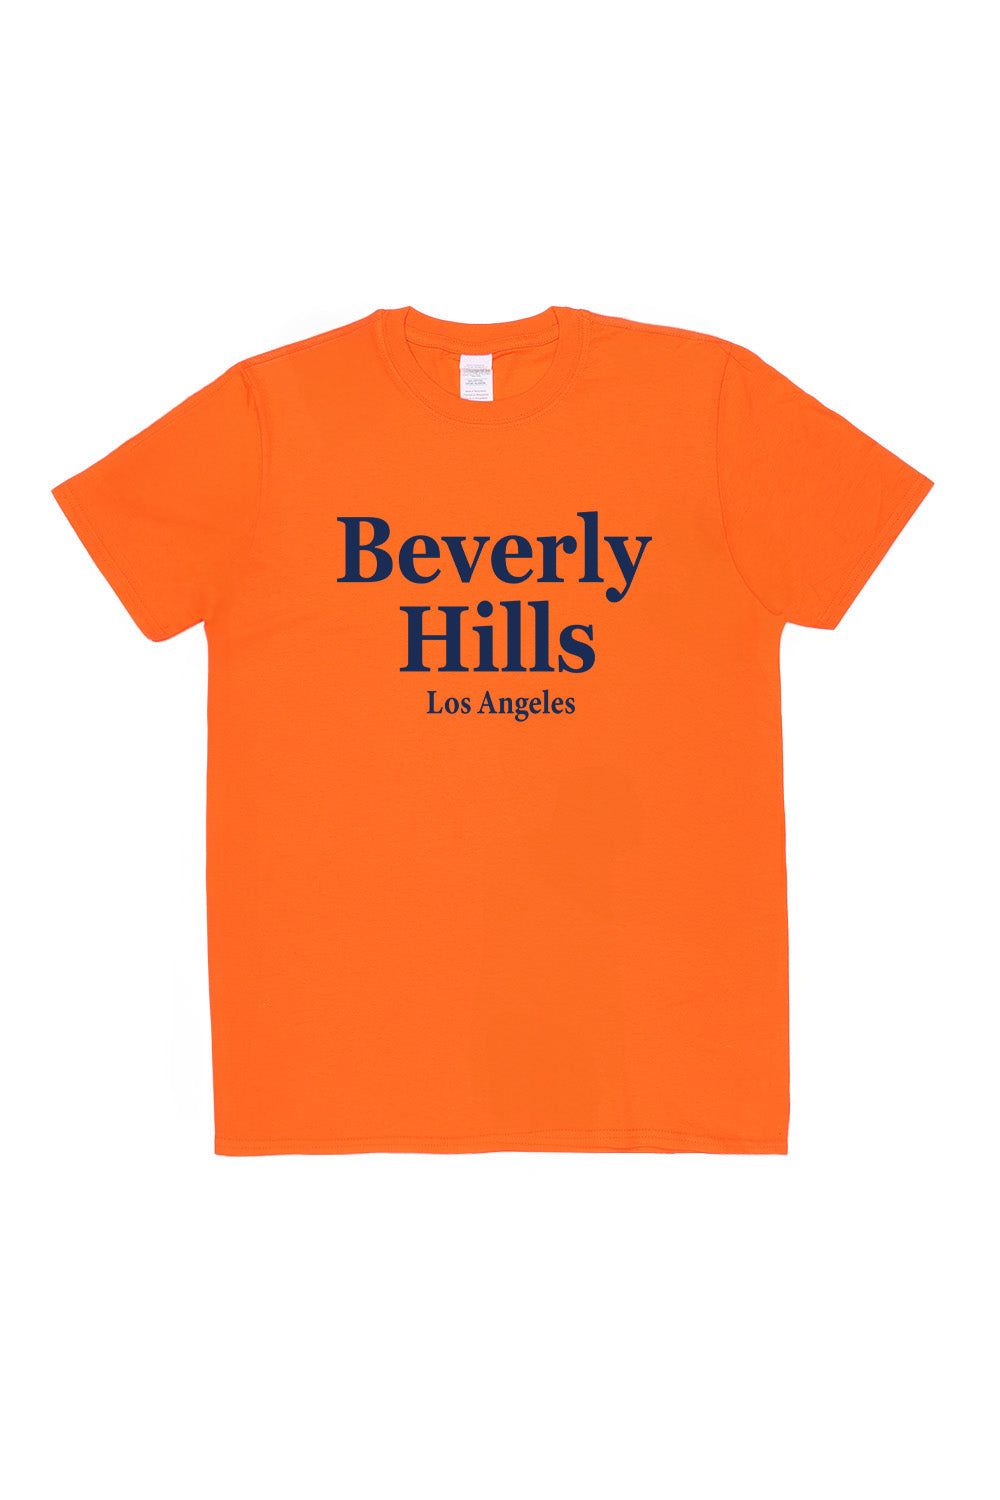 Beverly Hills T-Shirt in Orange (Custom Packs)